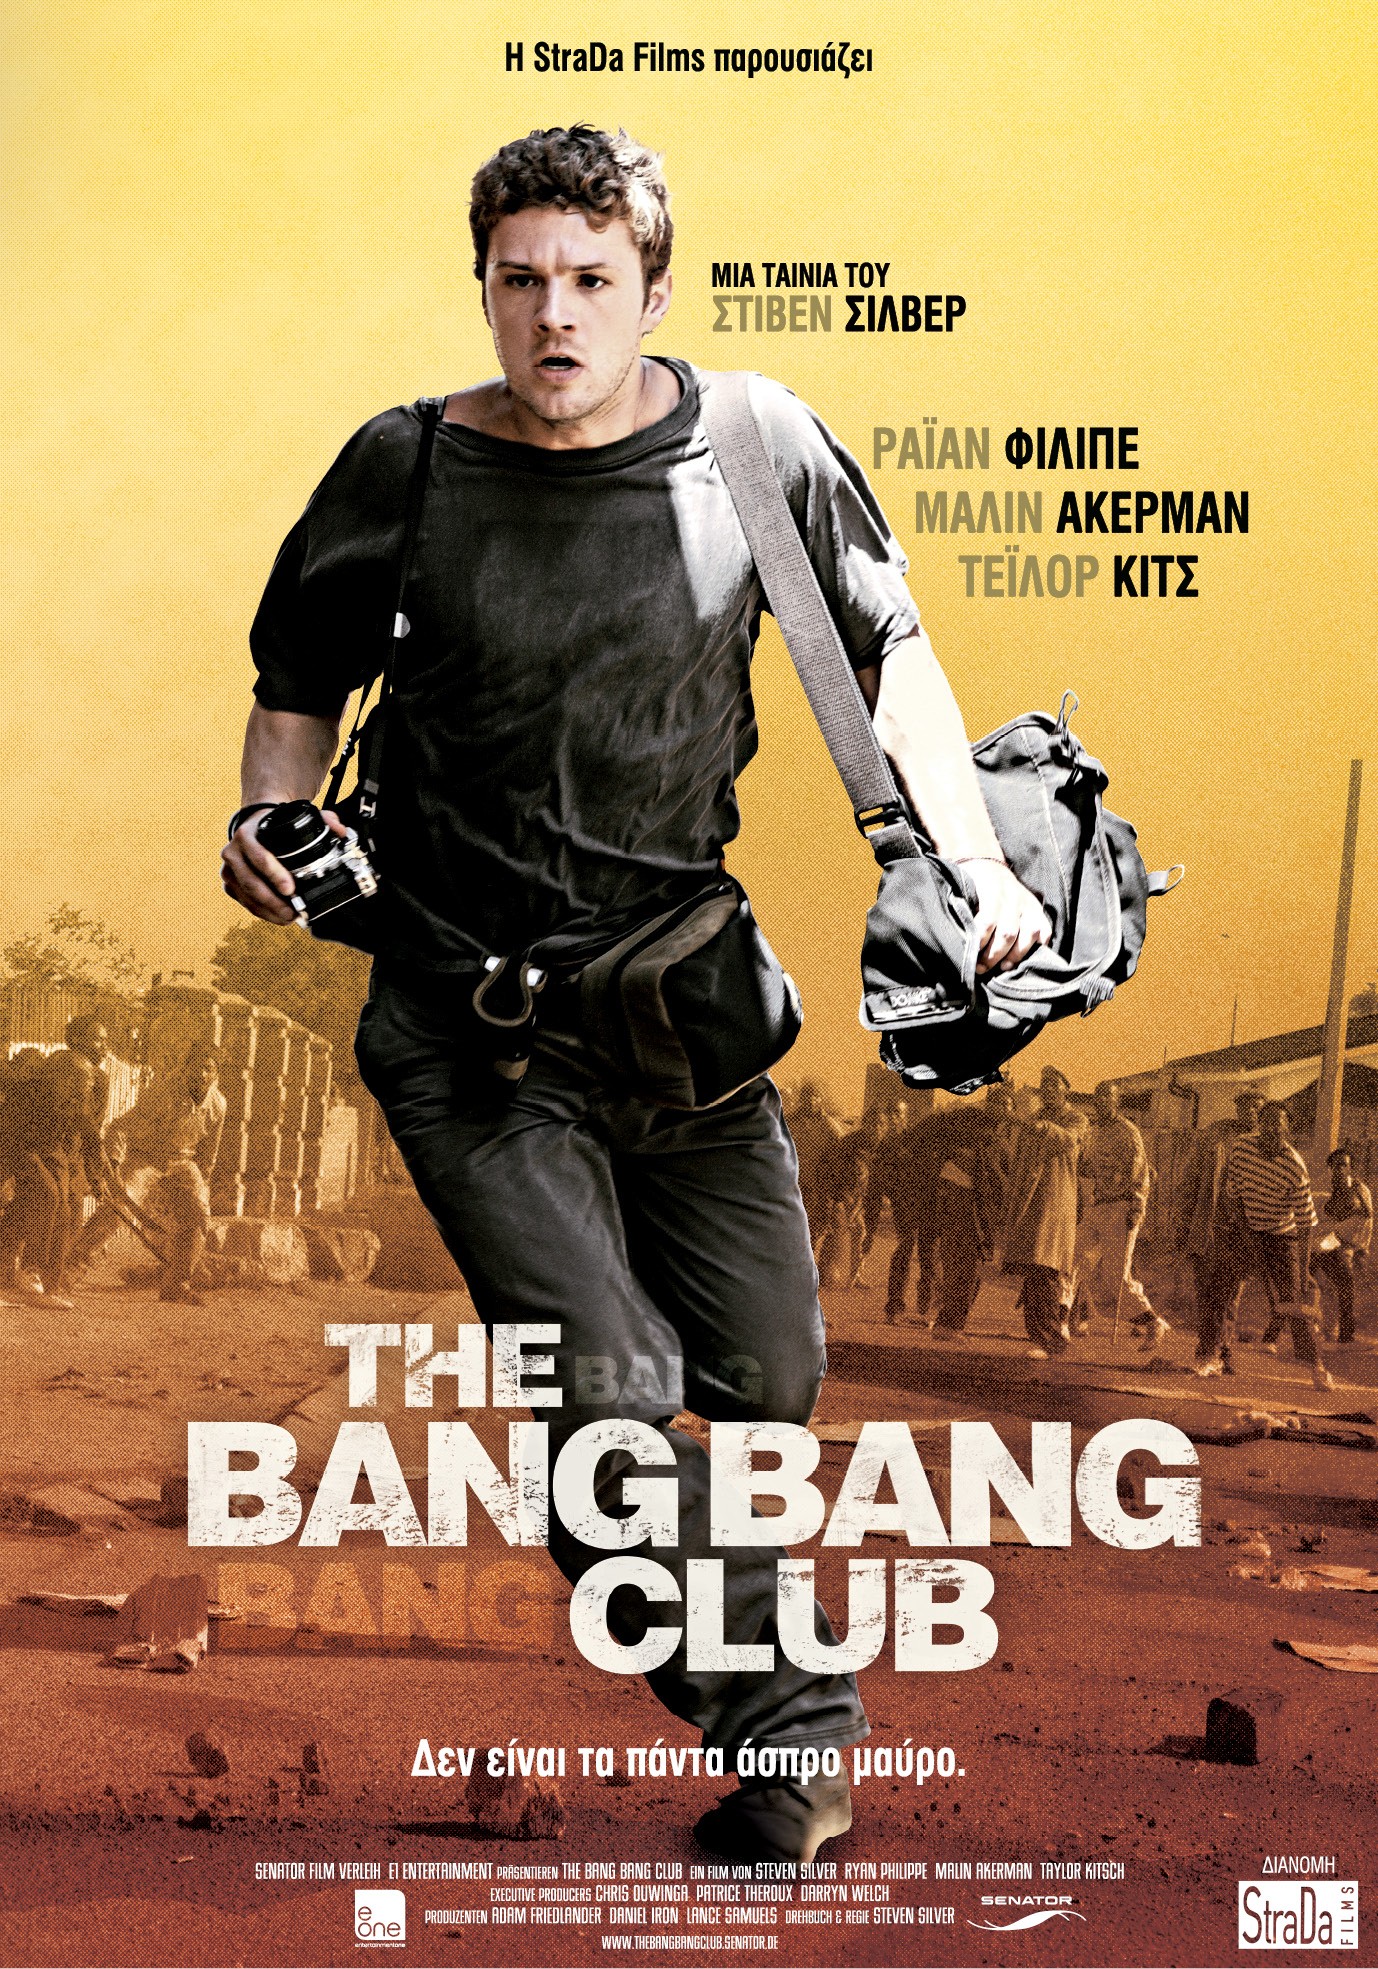 Bang bang movie. The Bang Bang Club 2010. Клуб безбашенных Постер. Клуб Bang-Bang,.